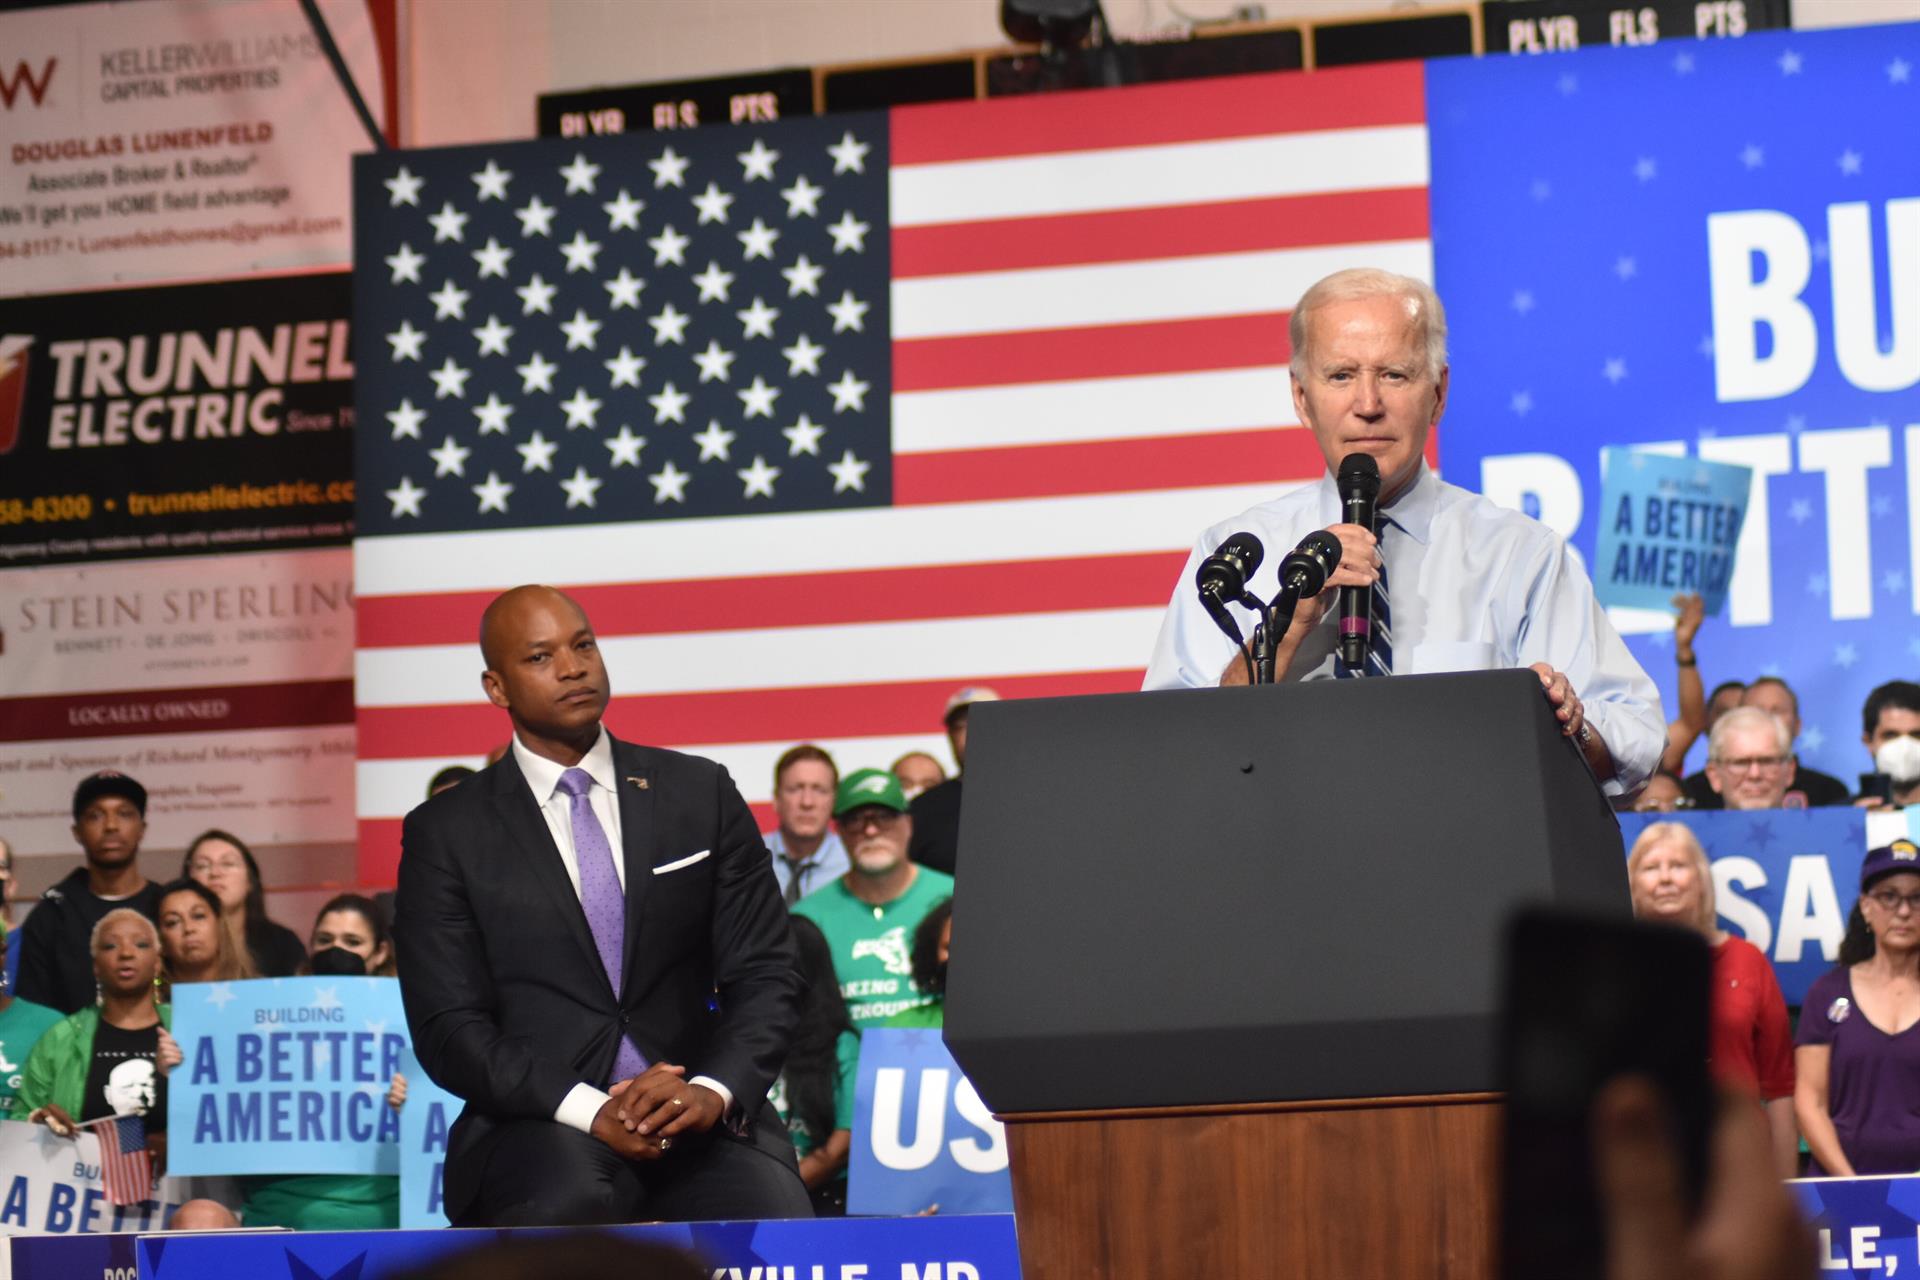 El presidente de Estados Unidos, Joe Biden. - KYLE MAZZA / ZUMA PRESS / CONTACTOPHOTO